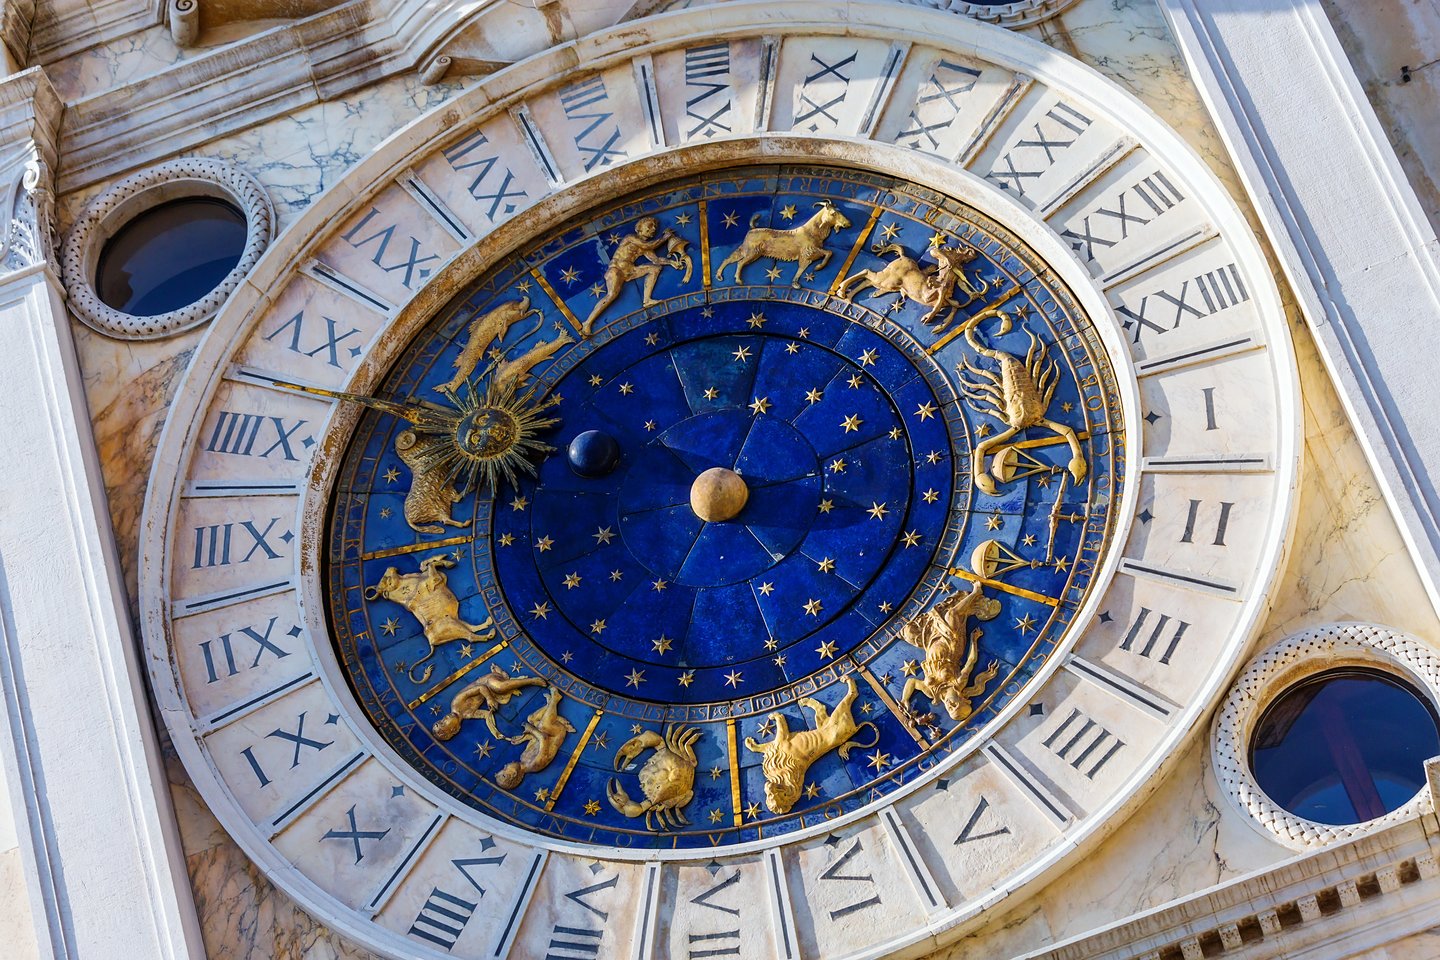 Италия часовой. Астрономические часы Сан Марко Венеция. Часовая башня Святого марка в Венеции. Часы на площади Сан Марко в Венеции.